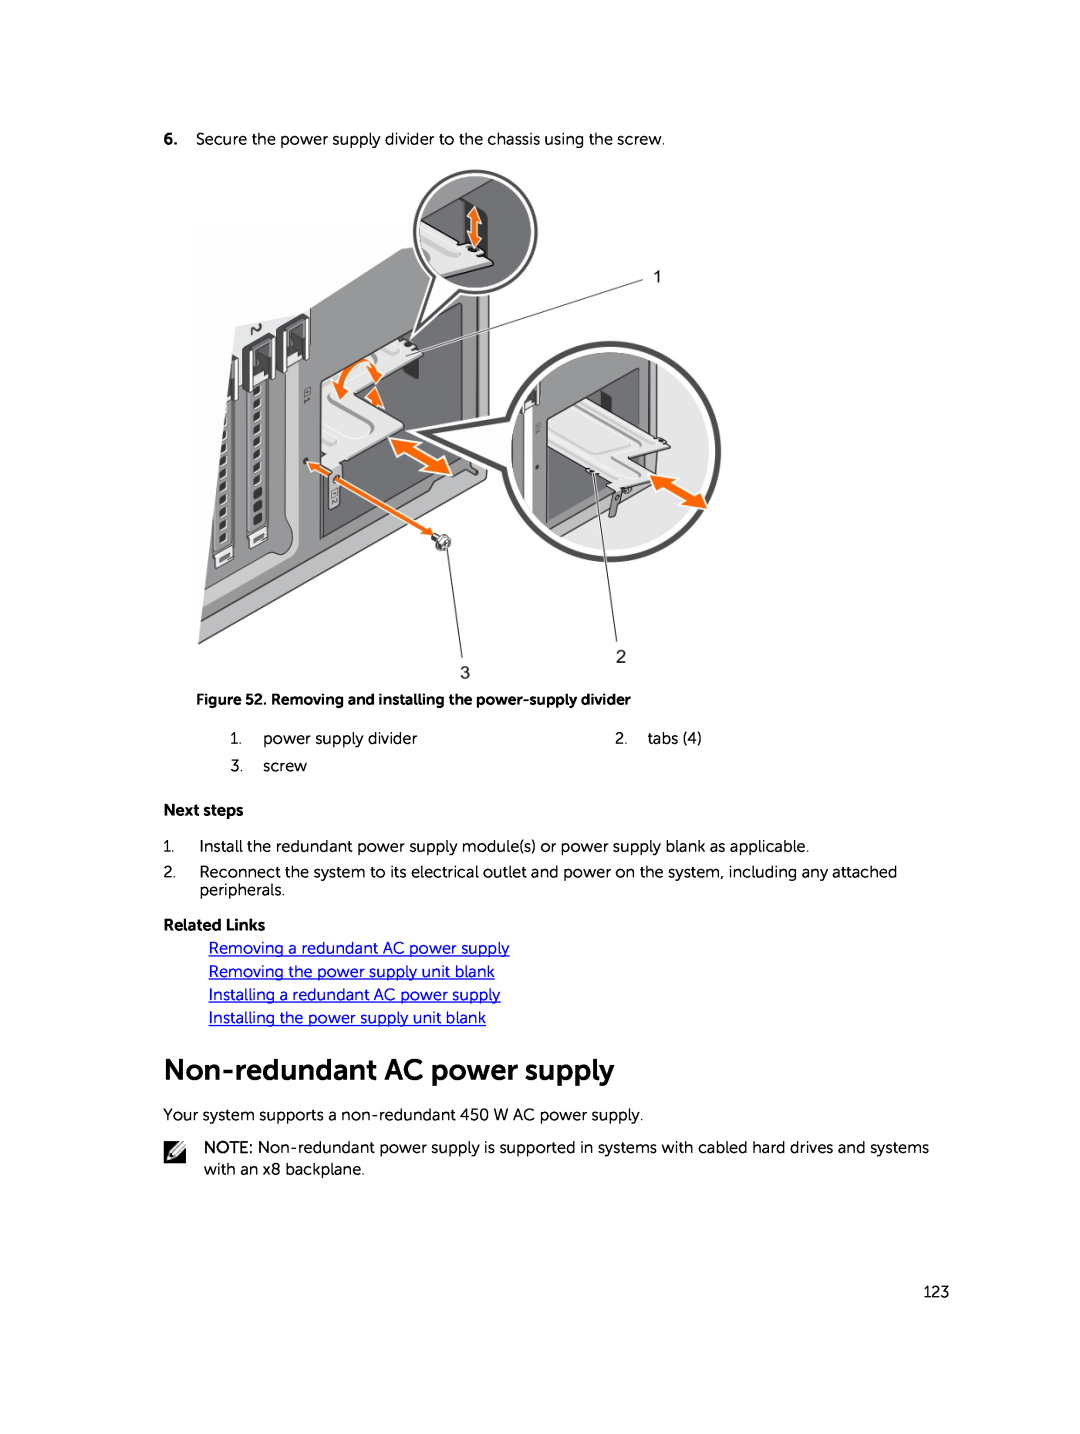 Dell E30S Non-redundant AC power supply, Removing a redundant AC power supply, Removing the power supply unit blank 